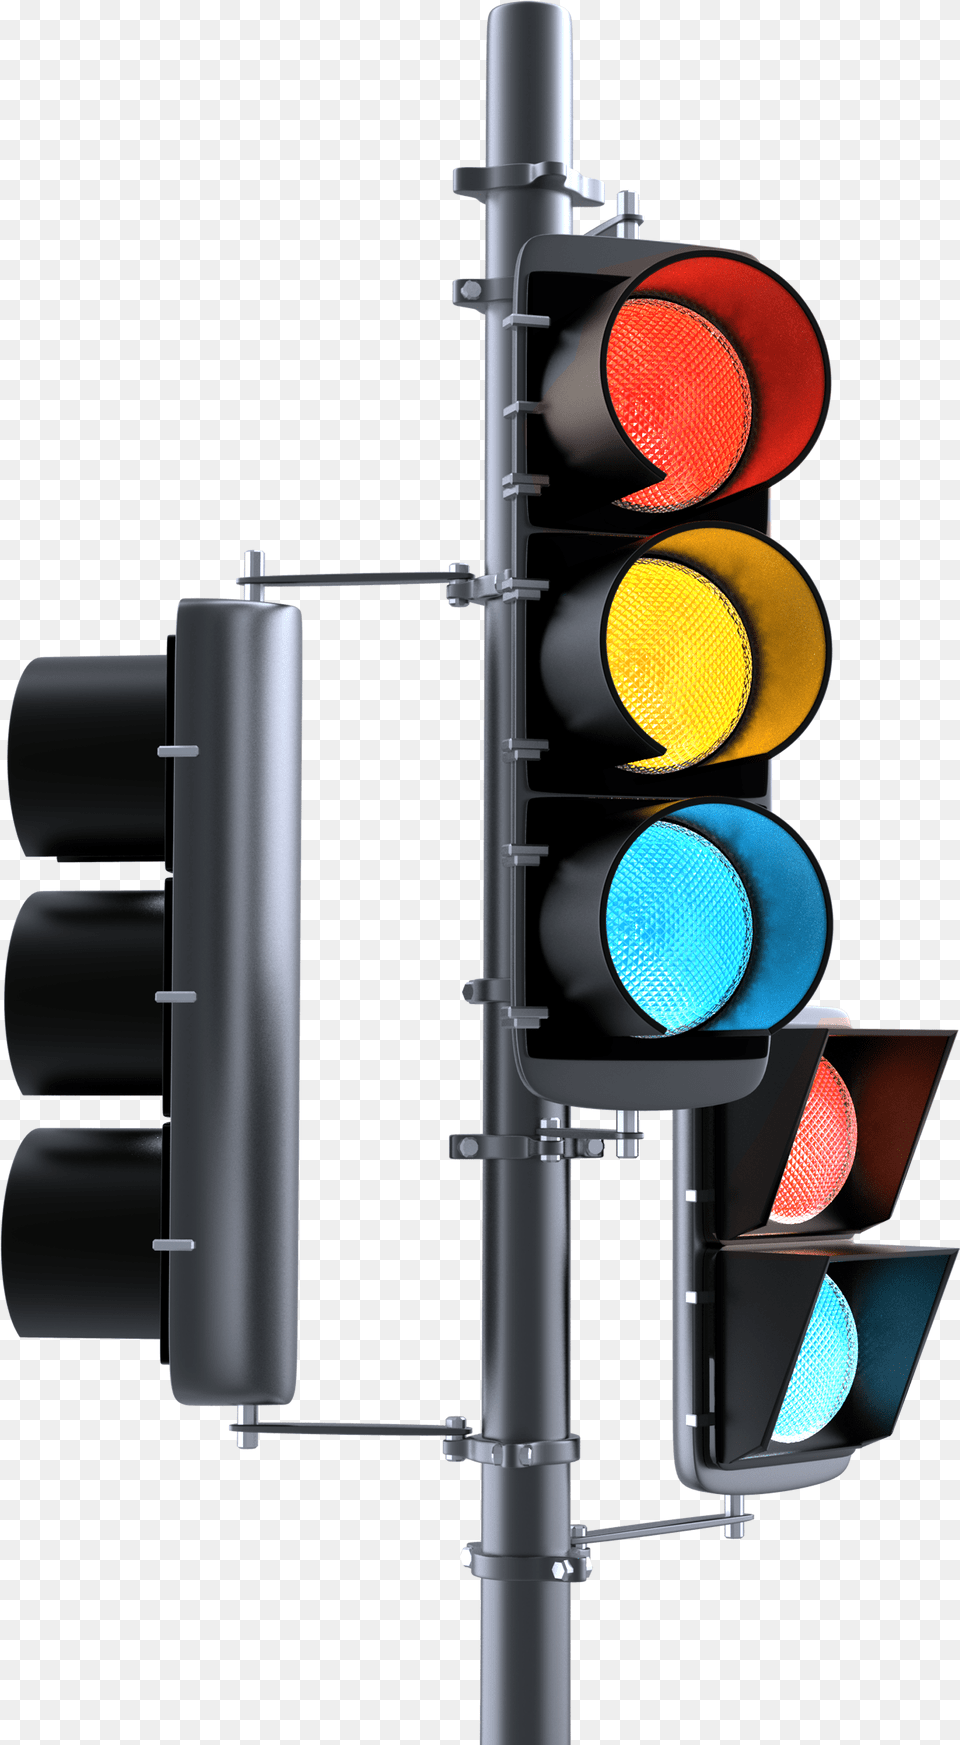 Traffic Light Images Transparent Lights Traffic Light, Traffic Light Png Image